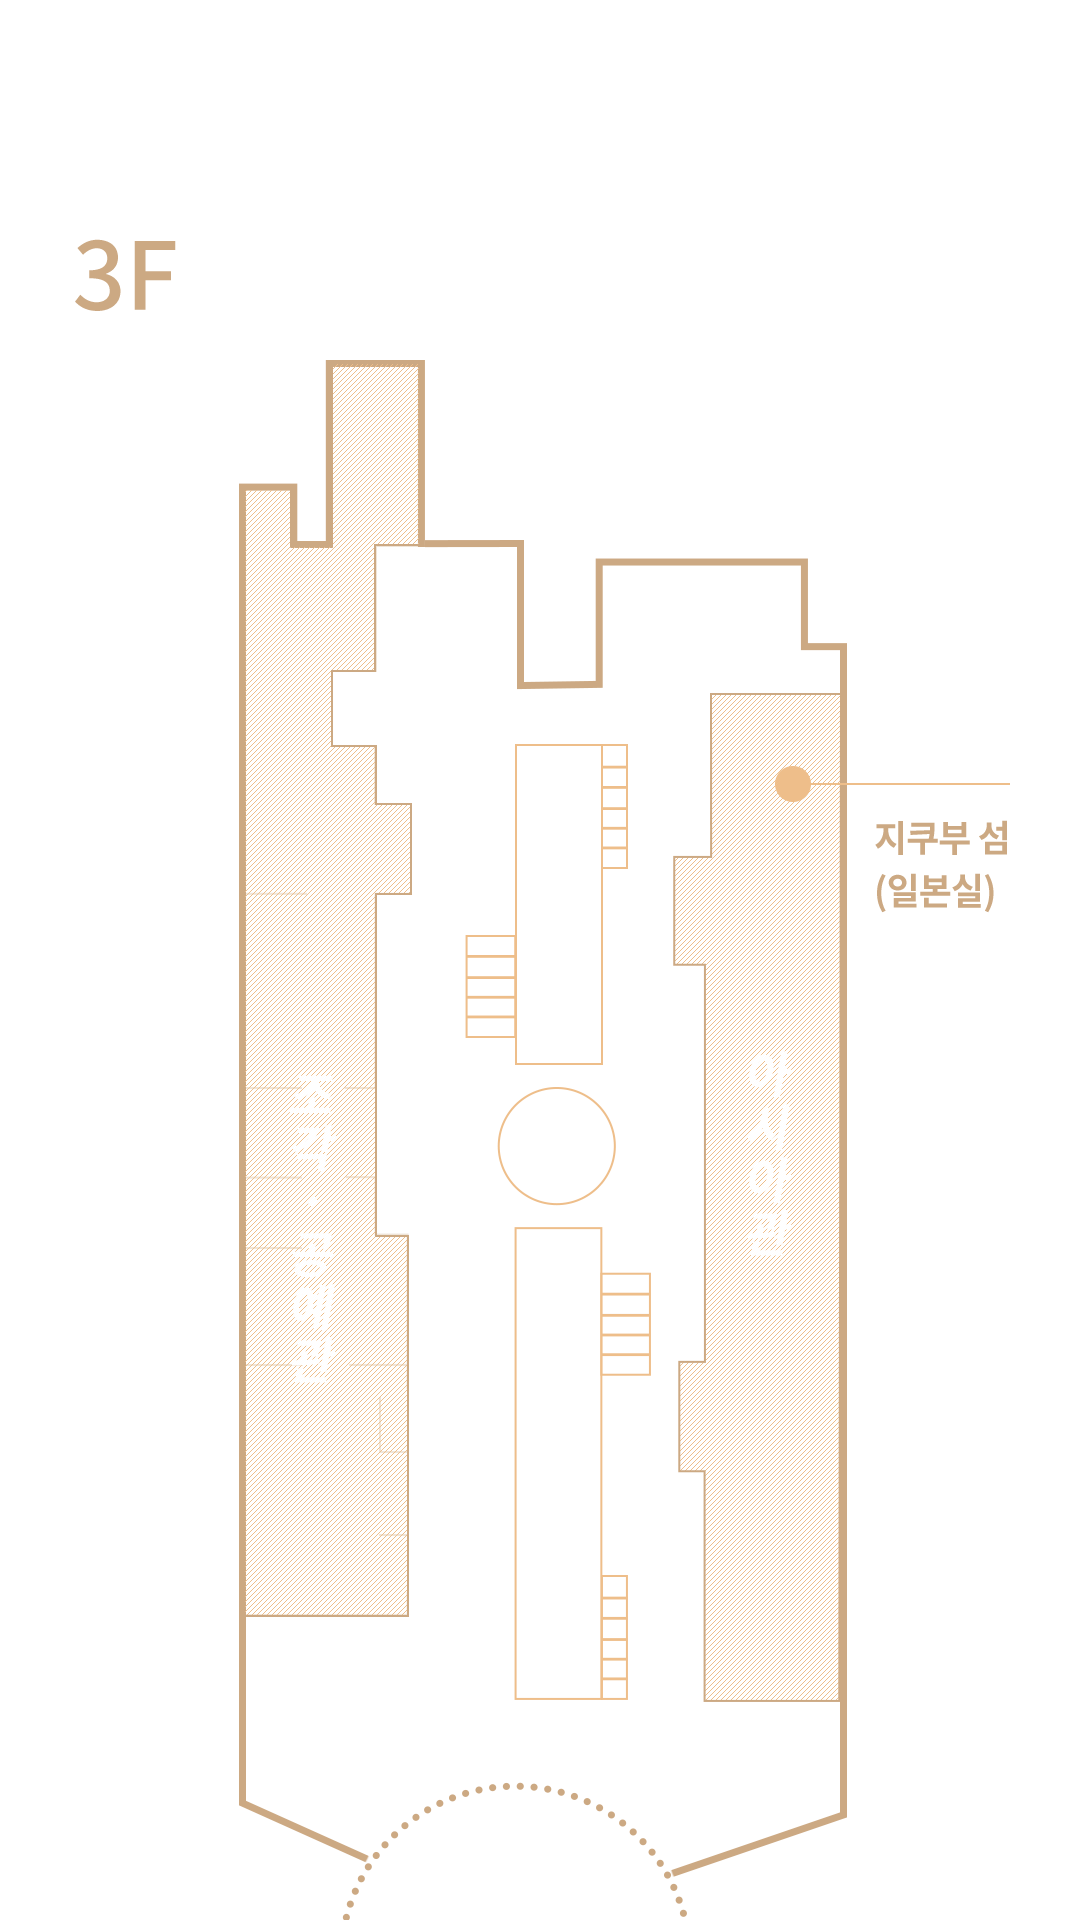 지쿠부 섬 위치 - 3층 아시아관 일본실